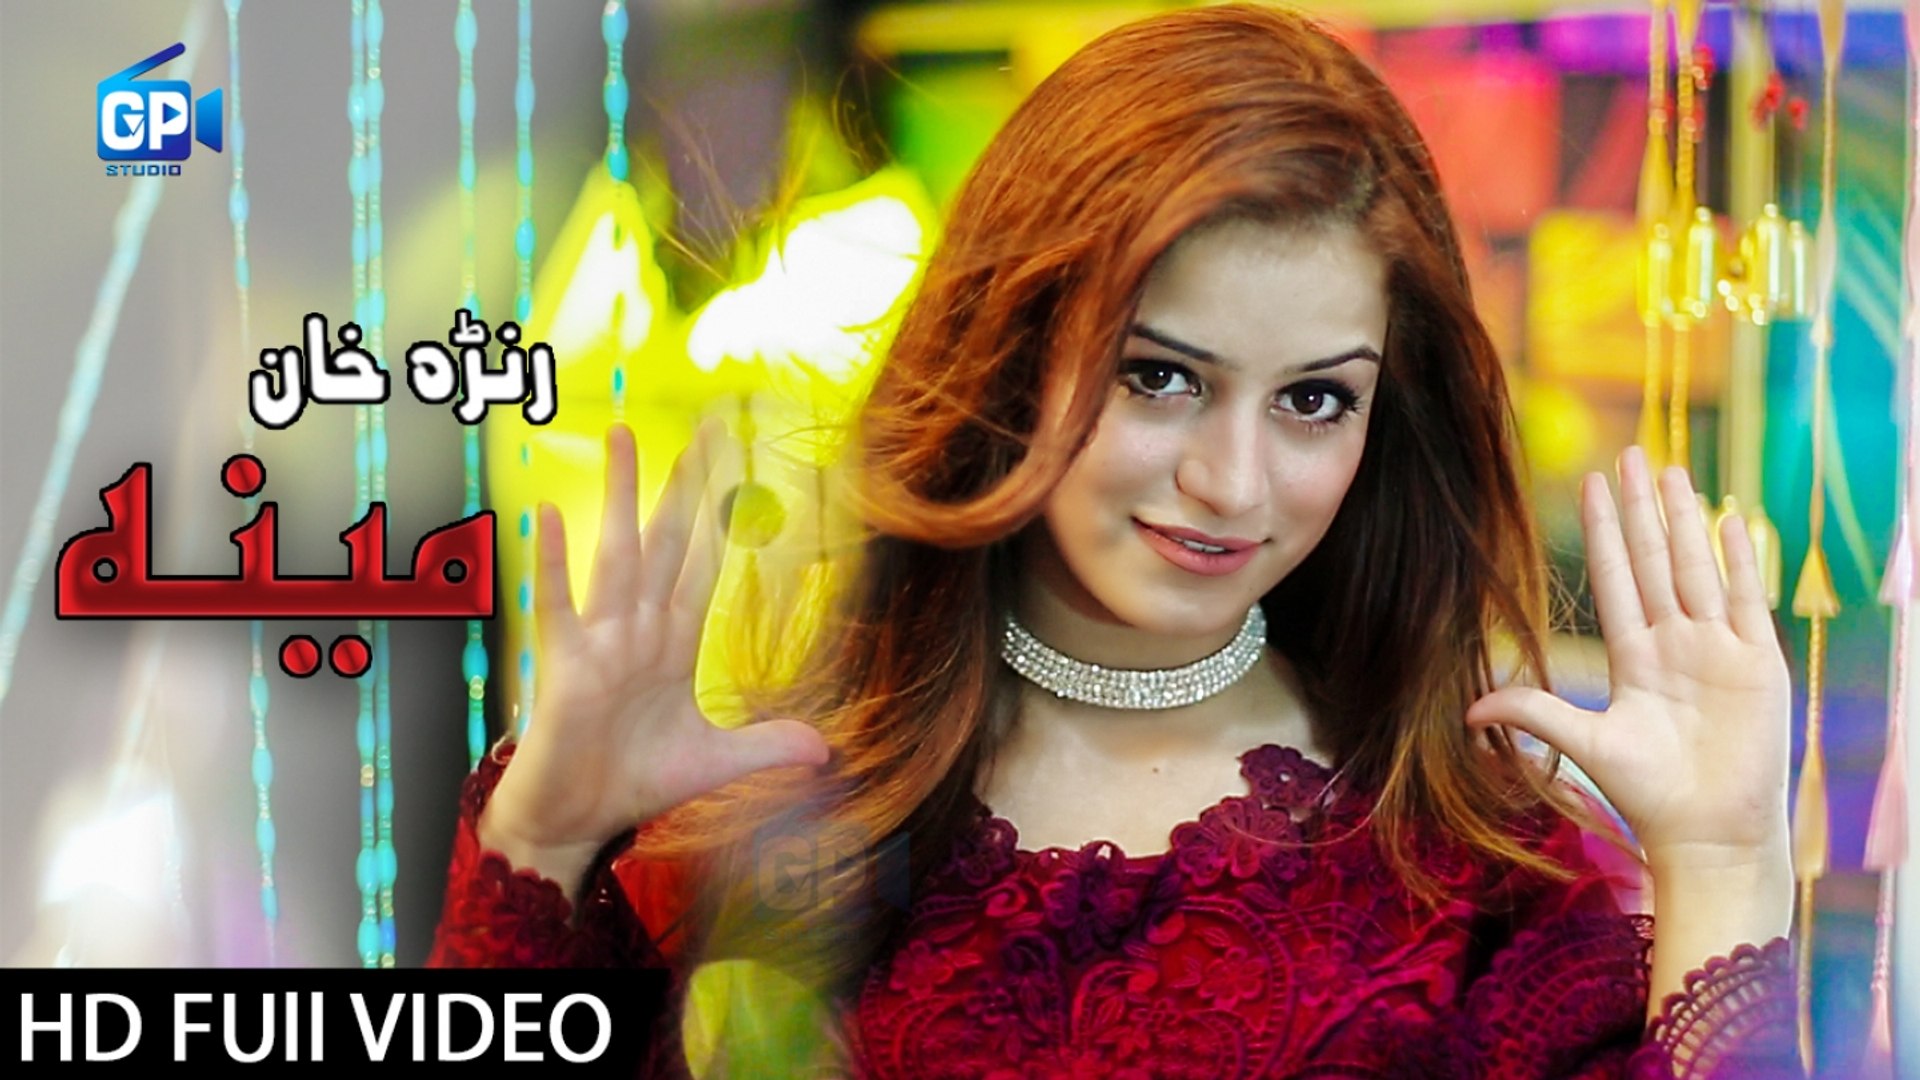 Pashto new song 2018 - Ranra Khan Meena new pashto song best music videos latest songs pashto hd